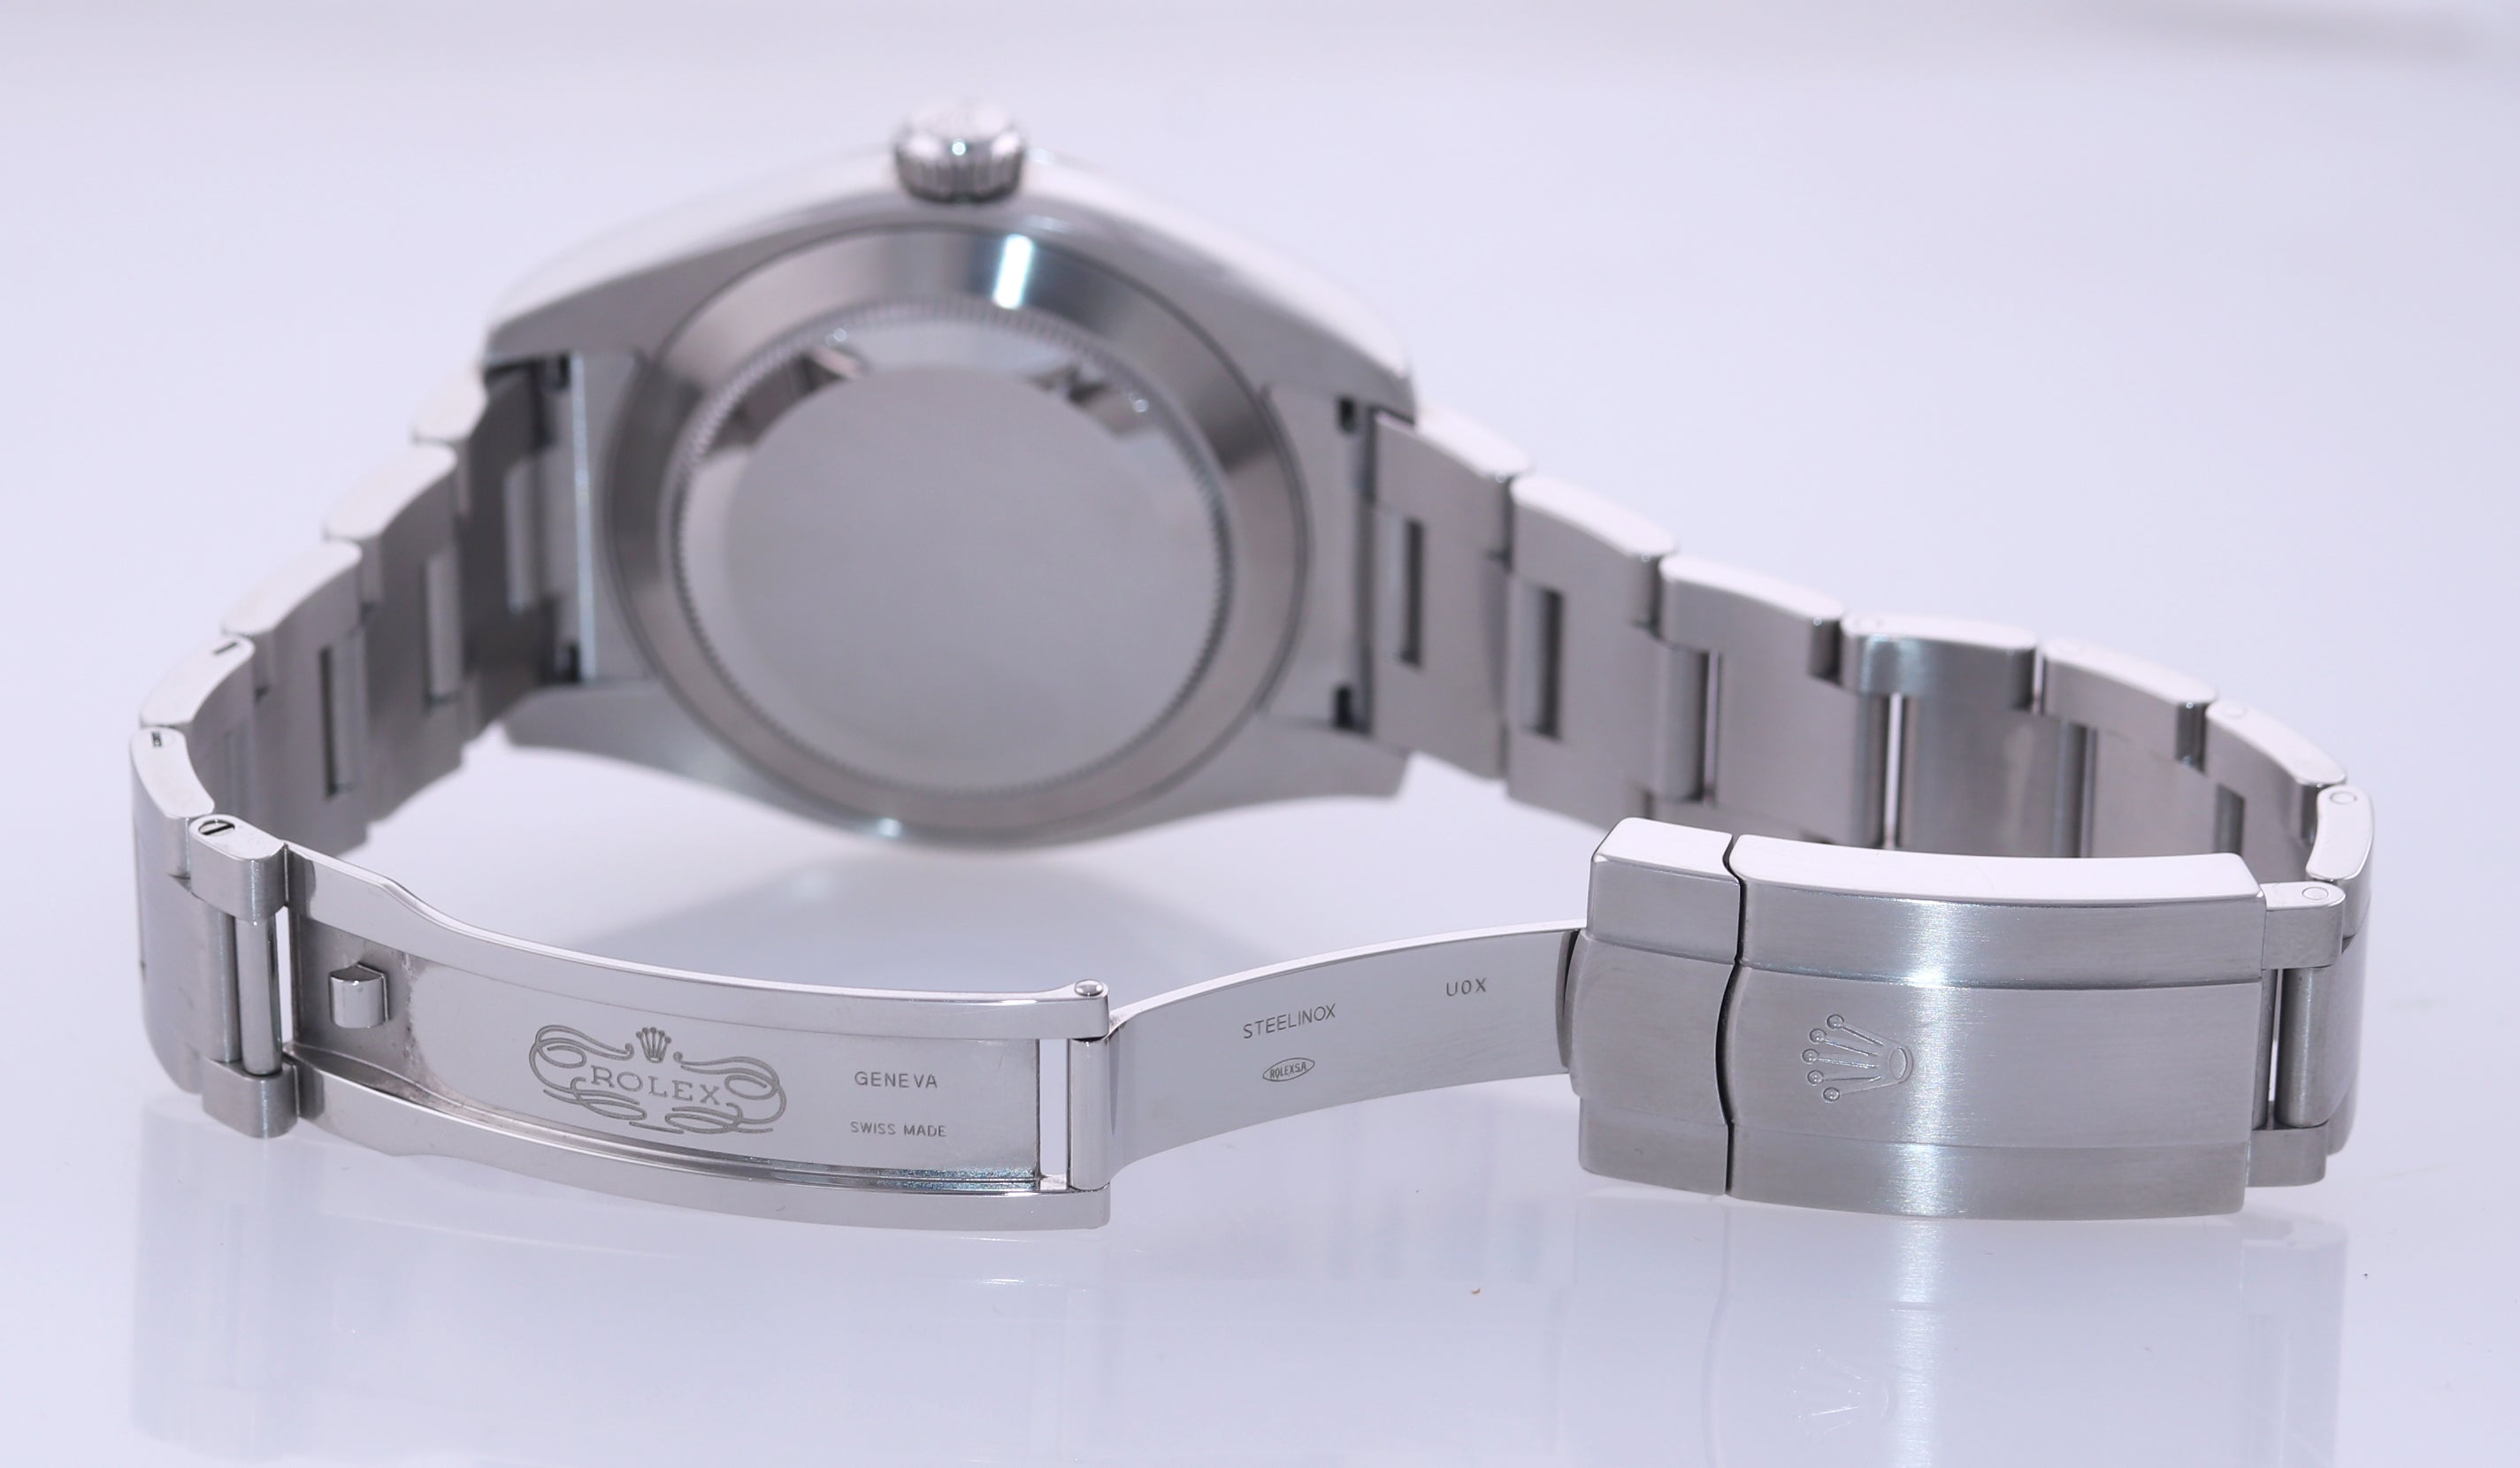 BRAND NEW 2020 Rolex Air-King 116900 Green Arabic 40mm Steel Watch Box